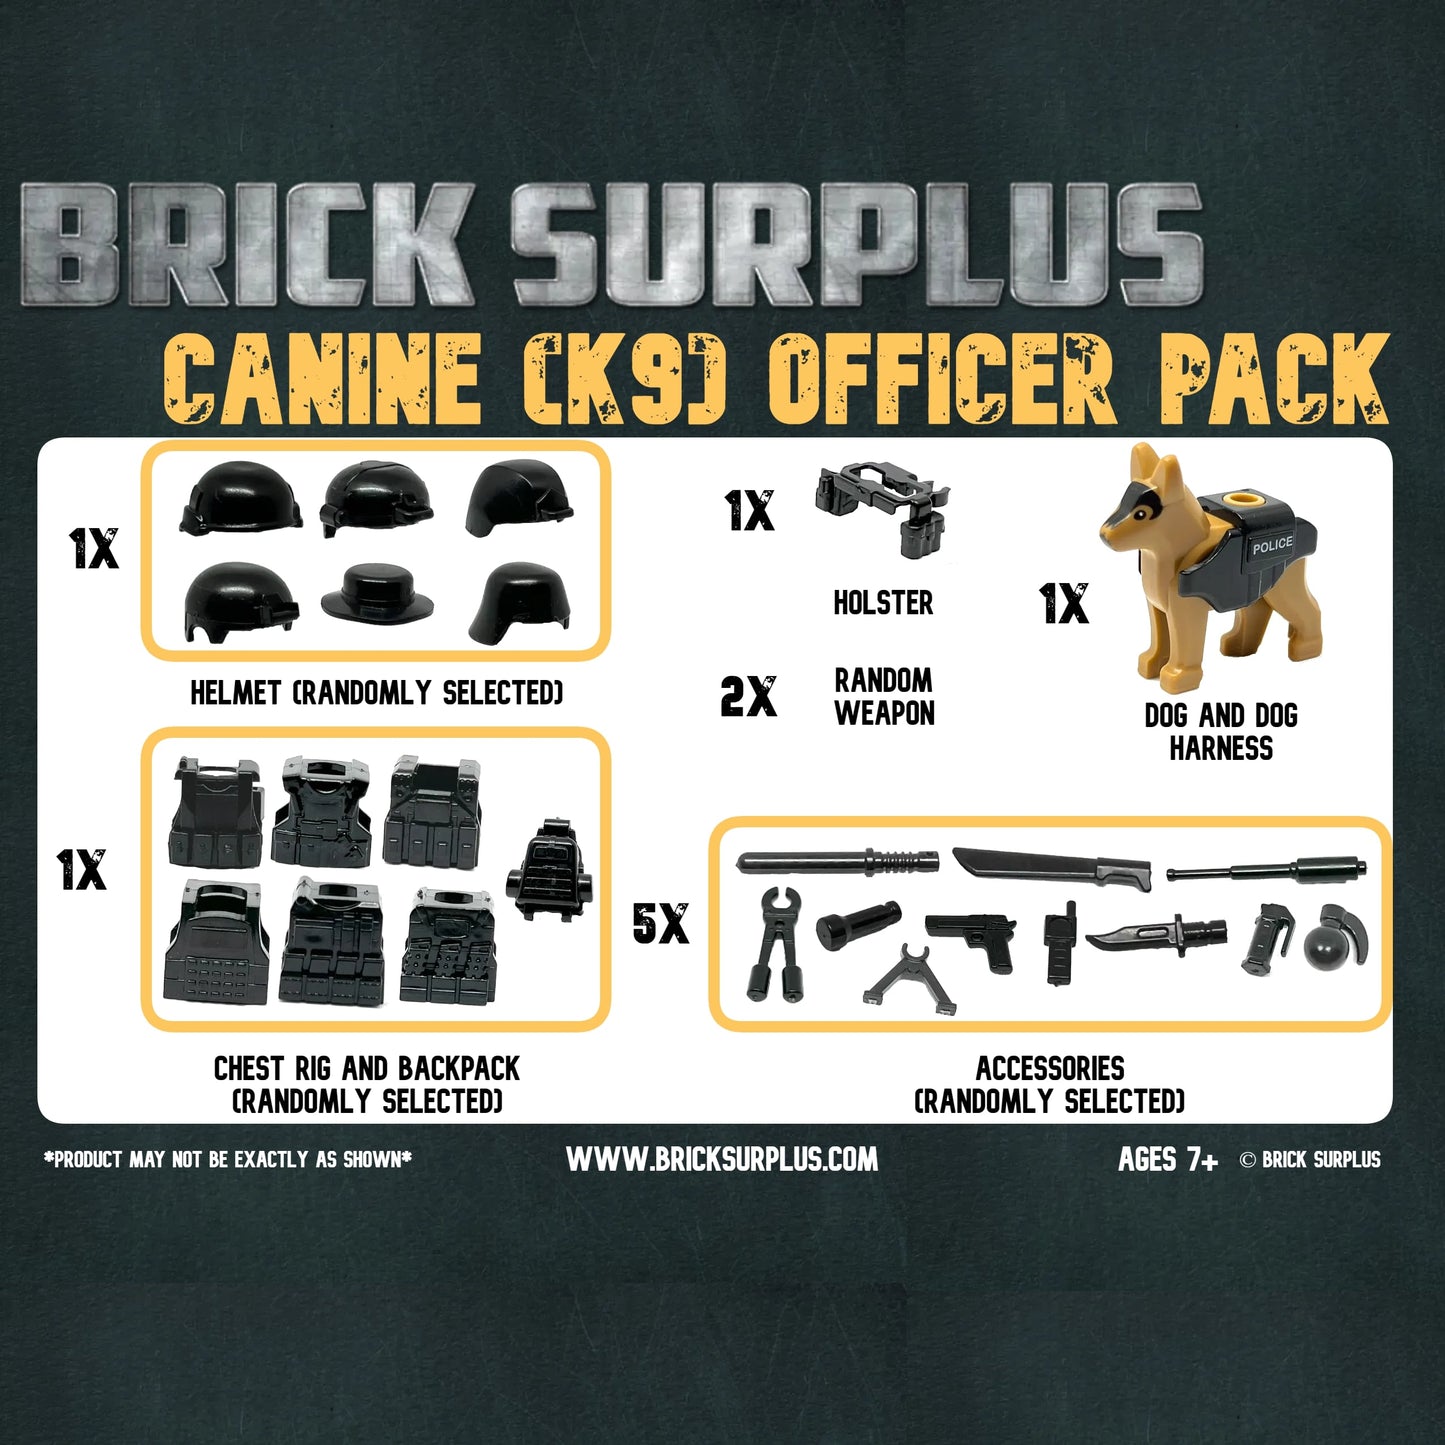 Canine (K9) Officer Armor